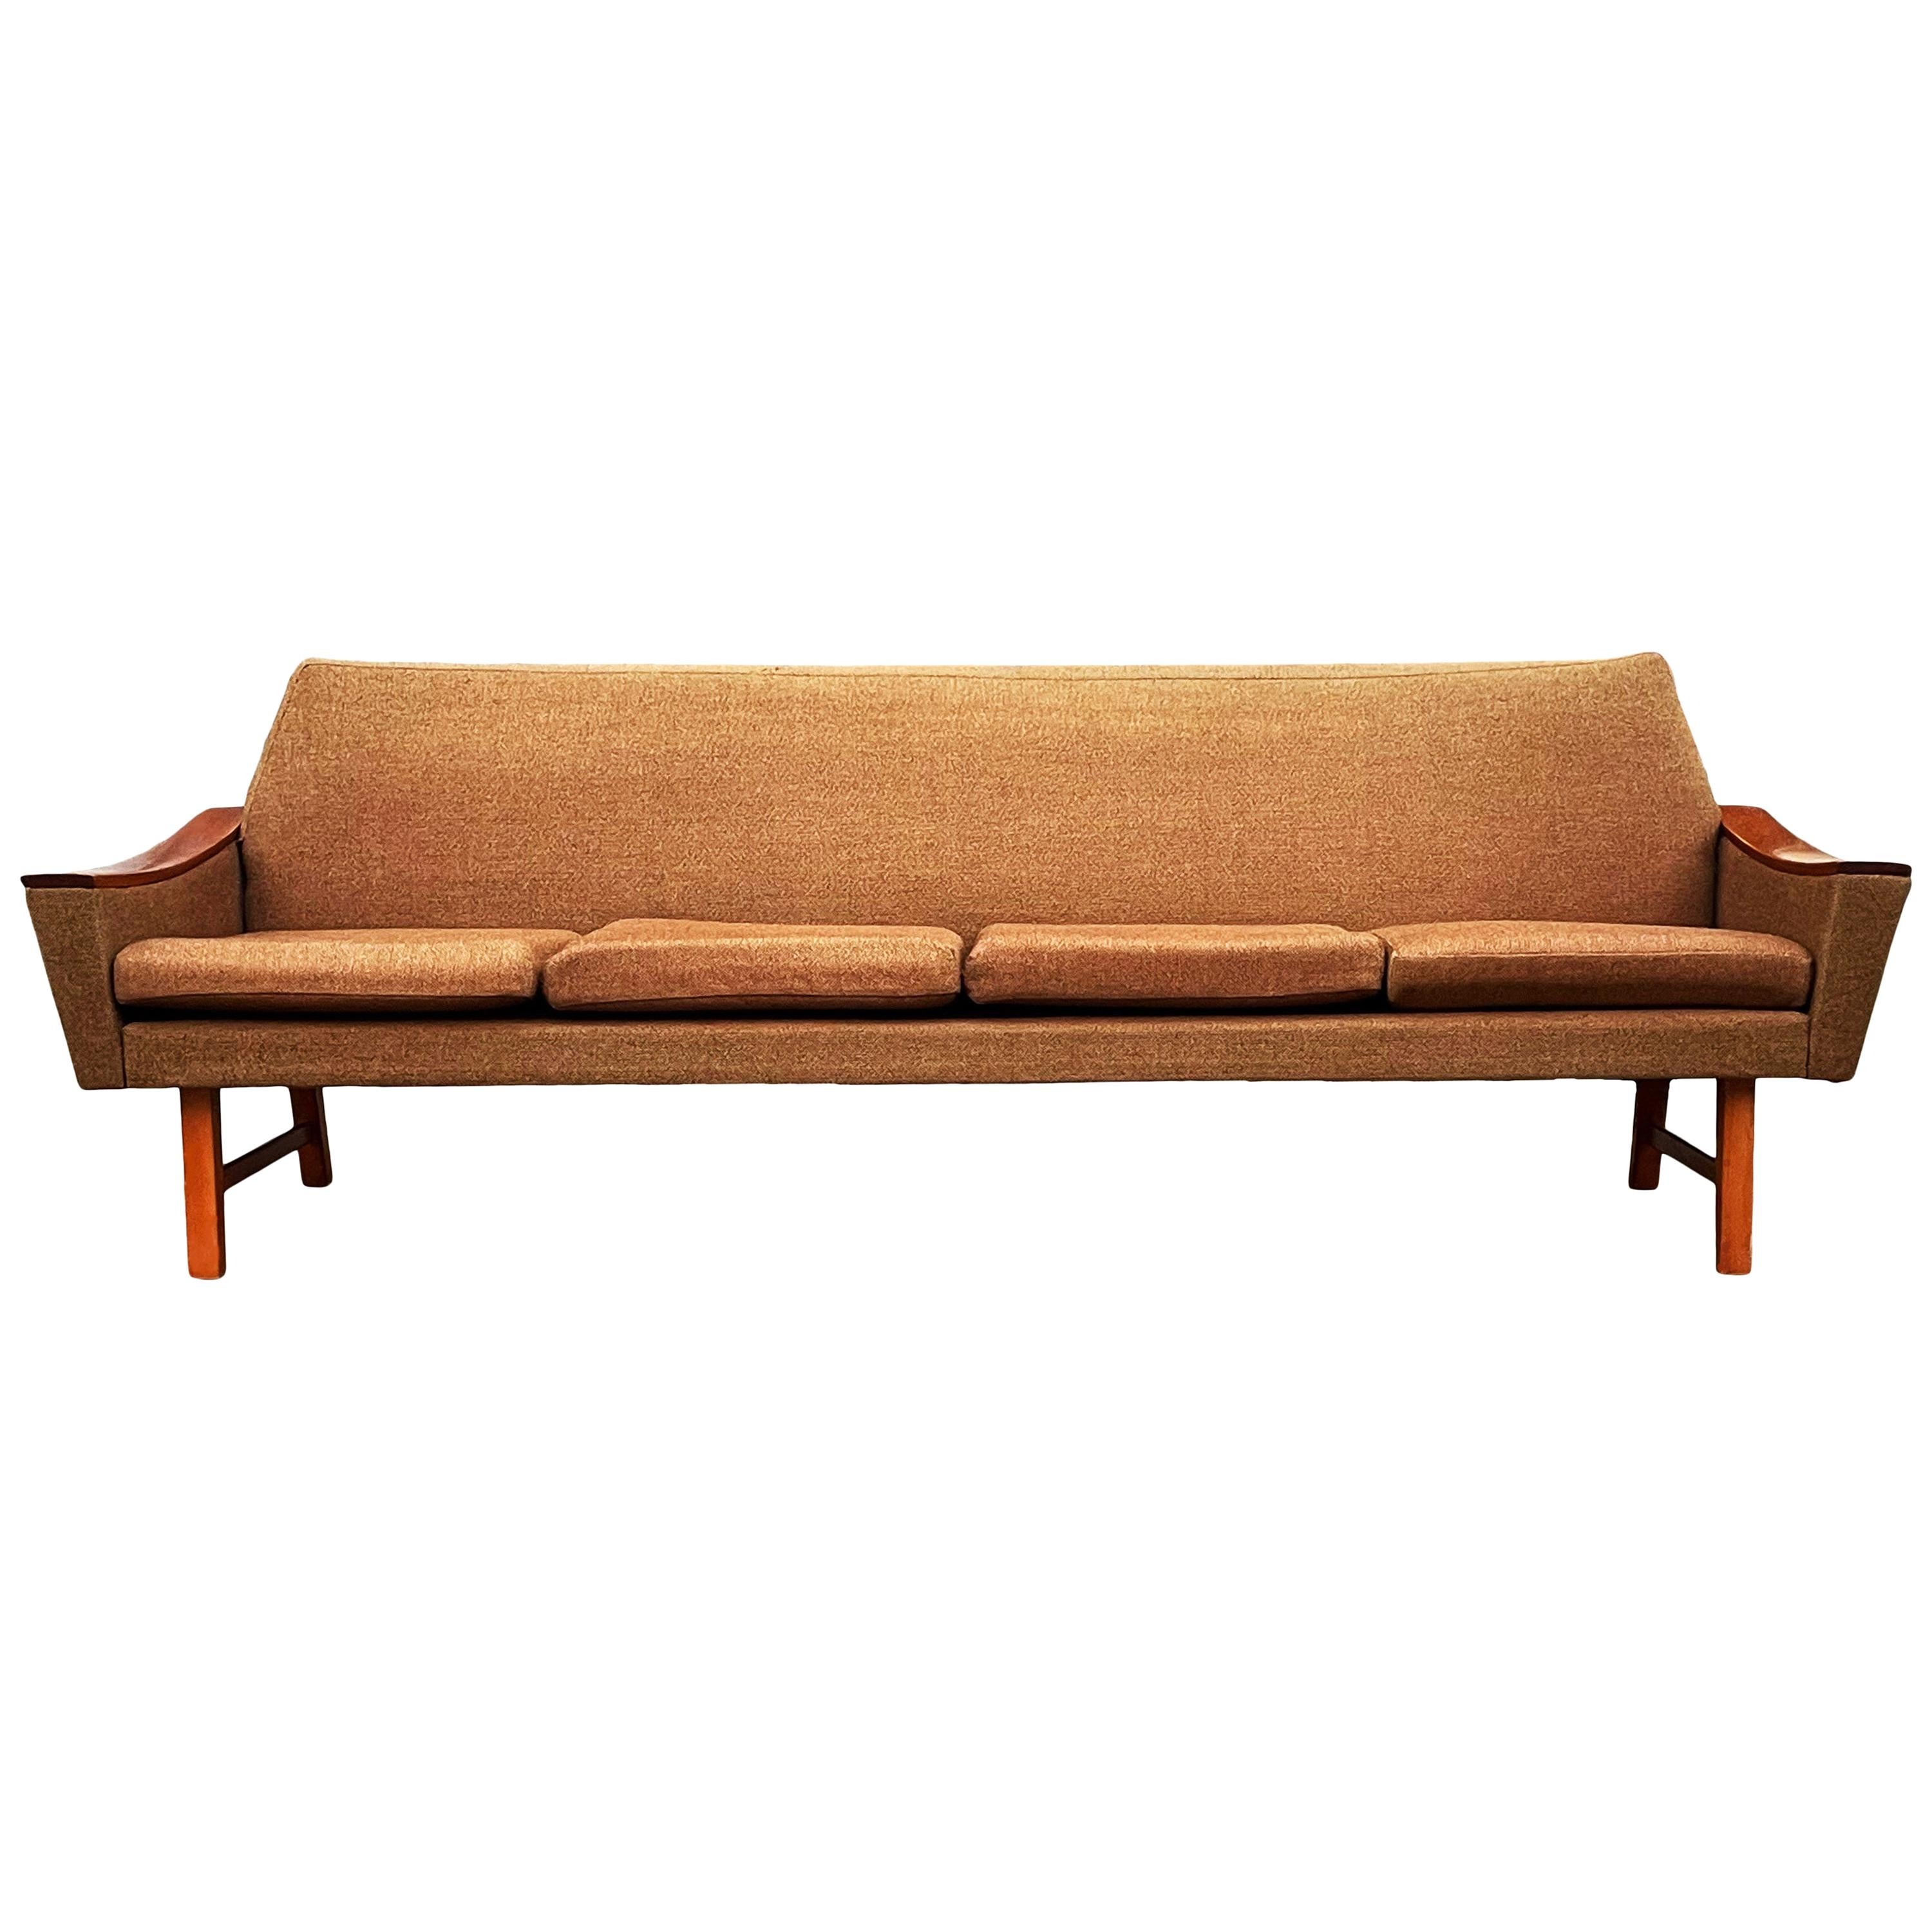 Midcentury Danish Modern Sofa in Teak by Oscar Langlo for Pi Langlos Fabrikker